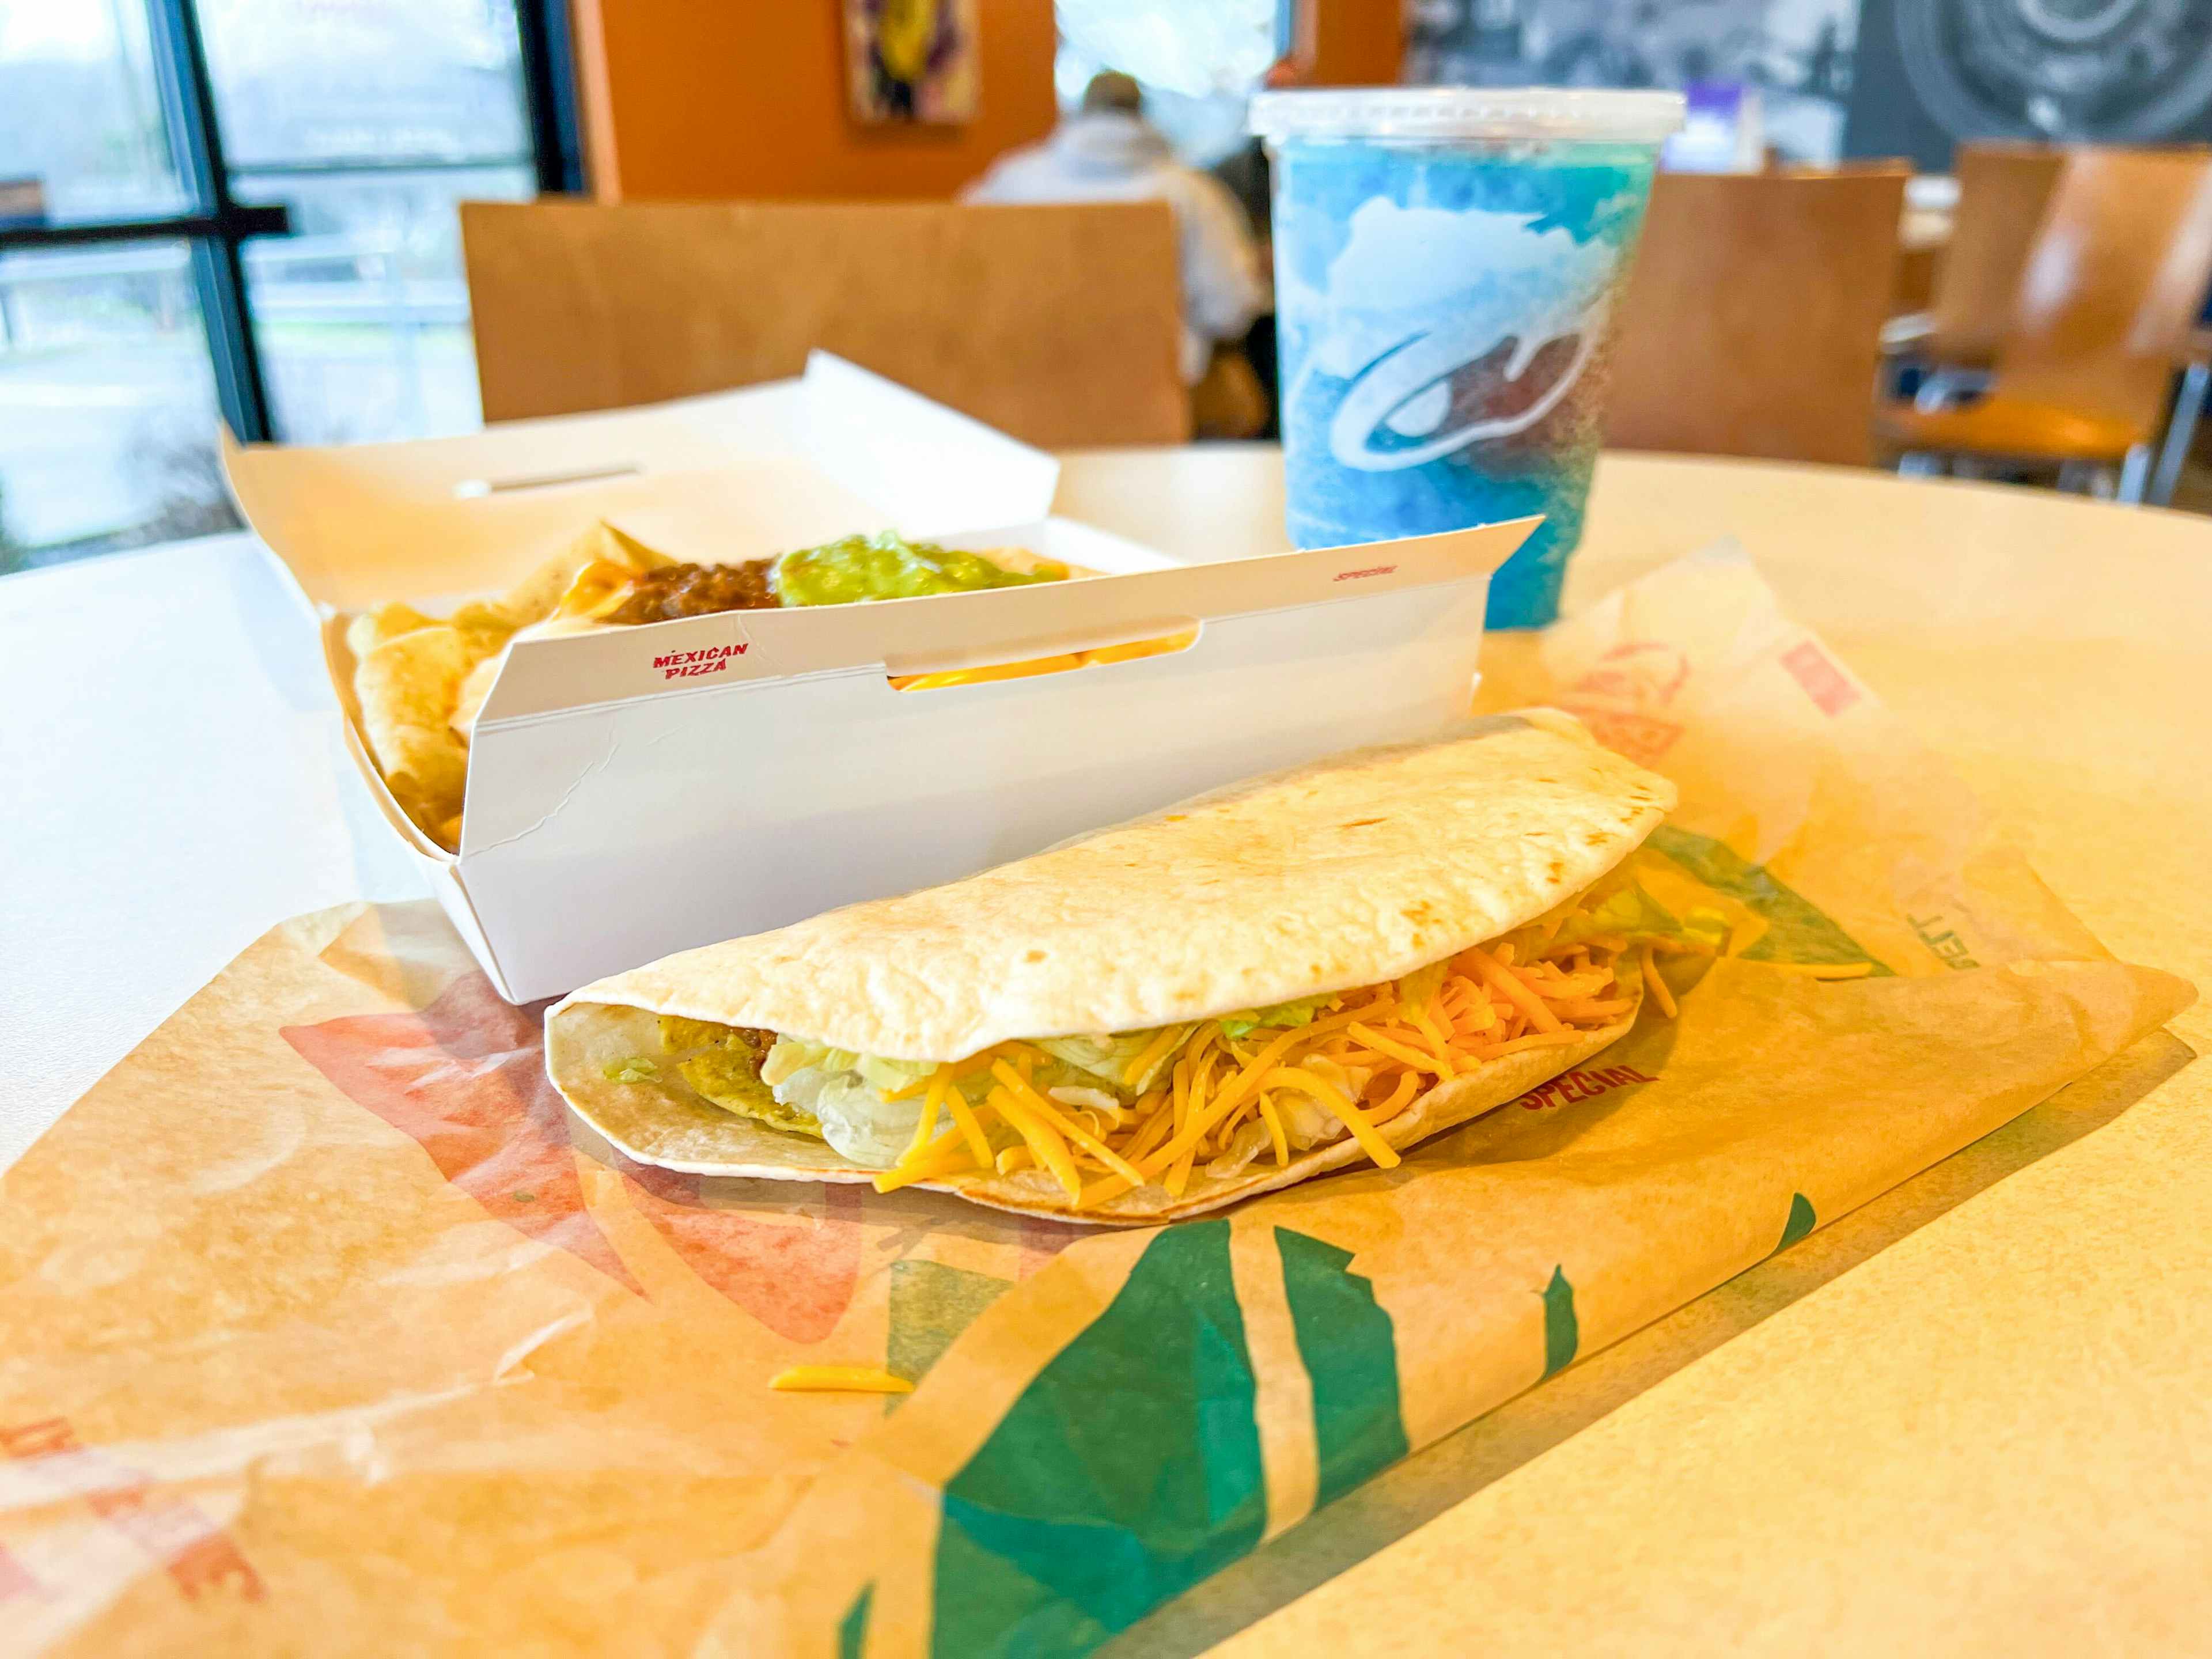 taco-bell-new-cravings-value-menu-tacos-burritos-kcl-02